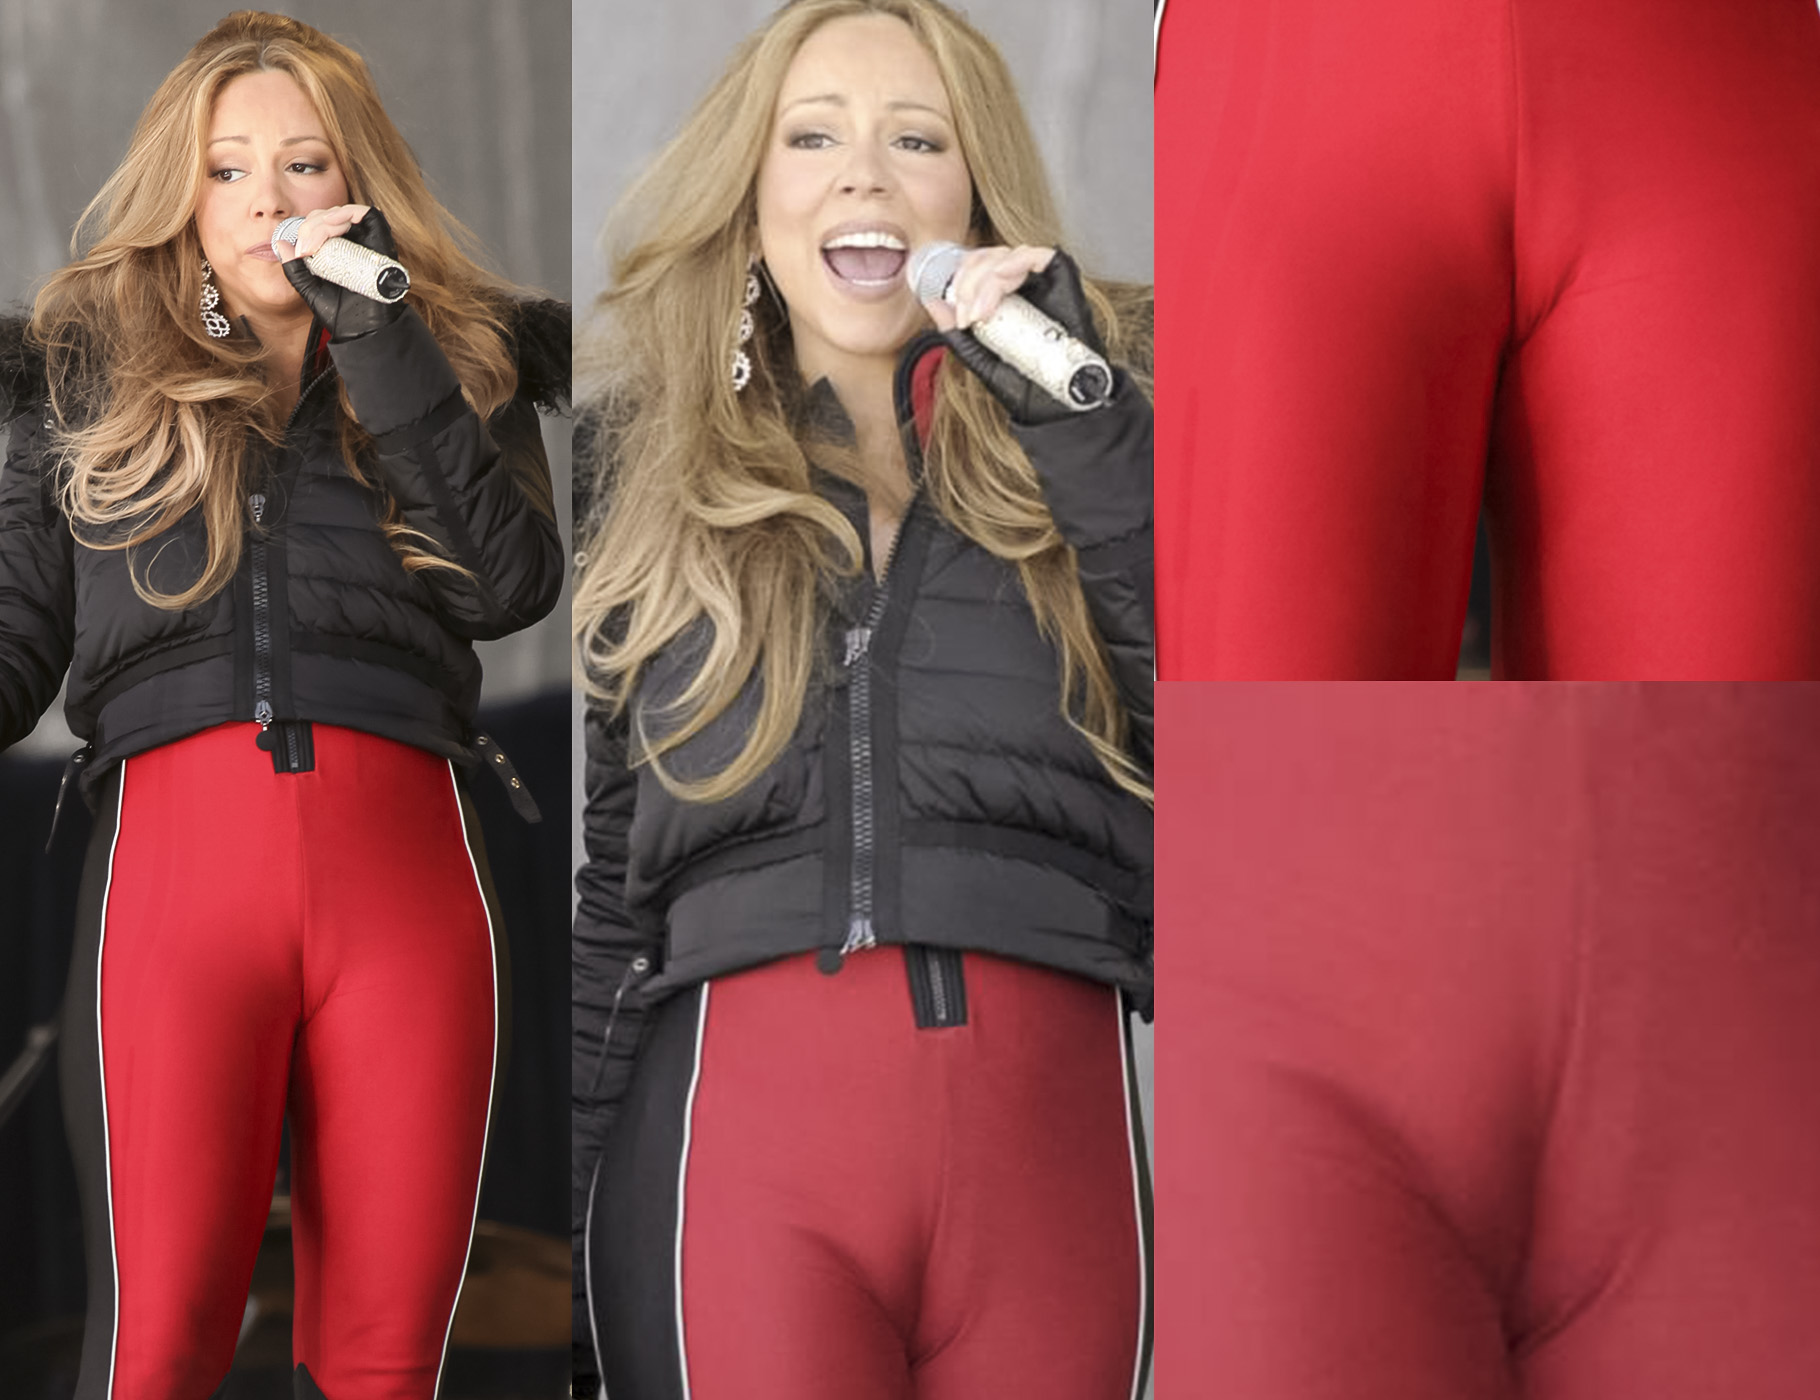 Mariah Carey camel toe - Mariah Carey cameltoe - Mariah C...